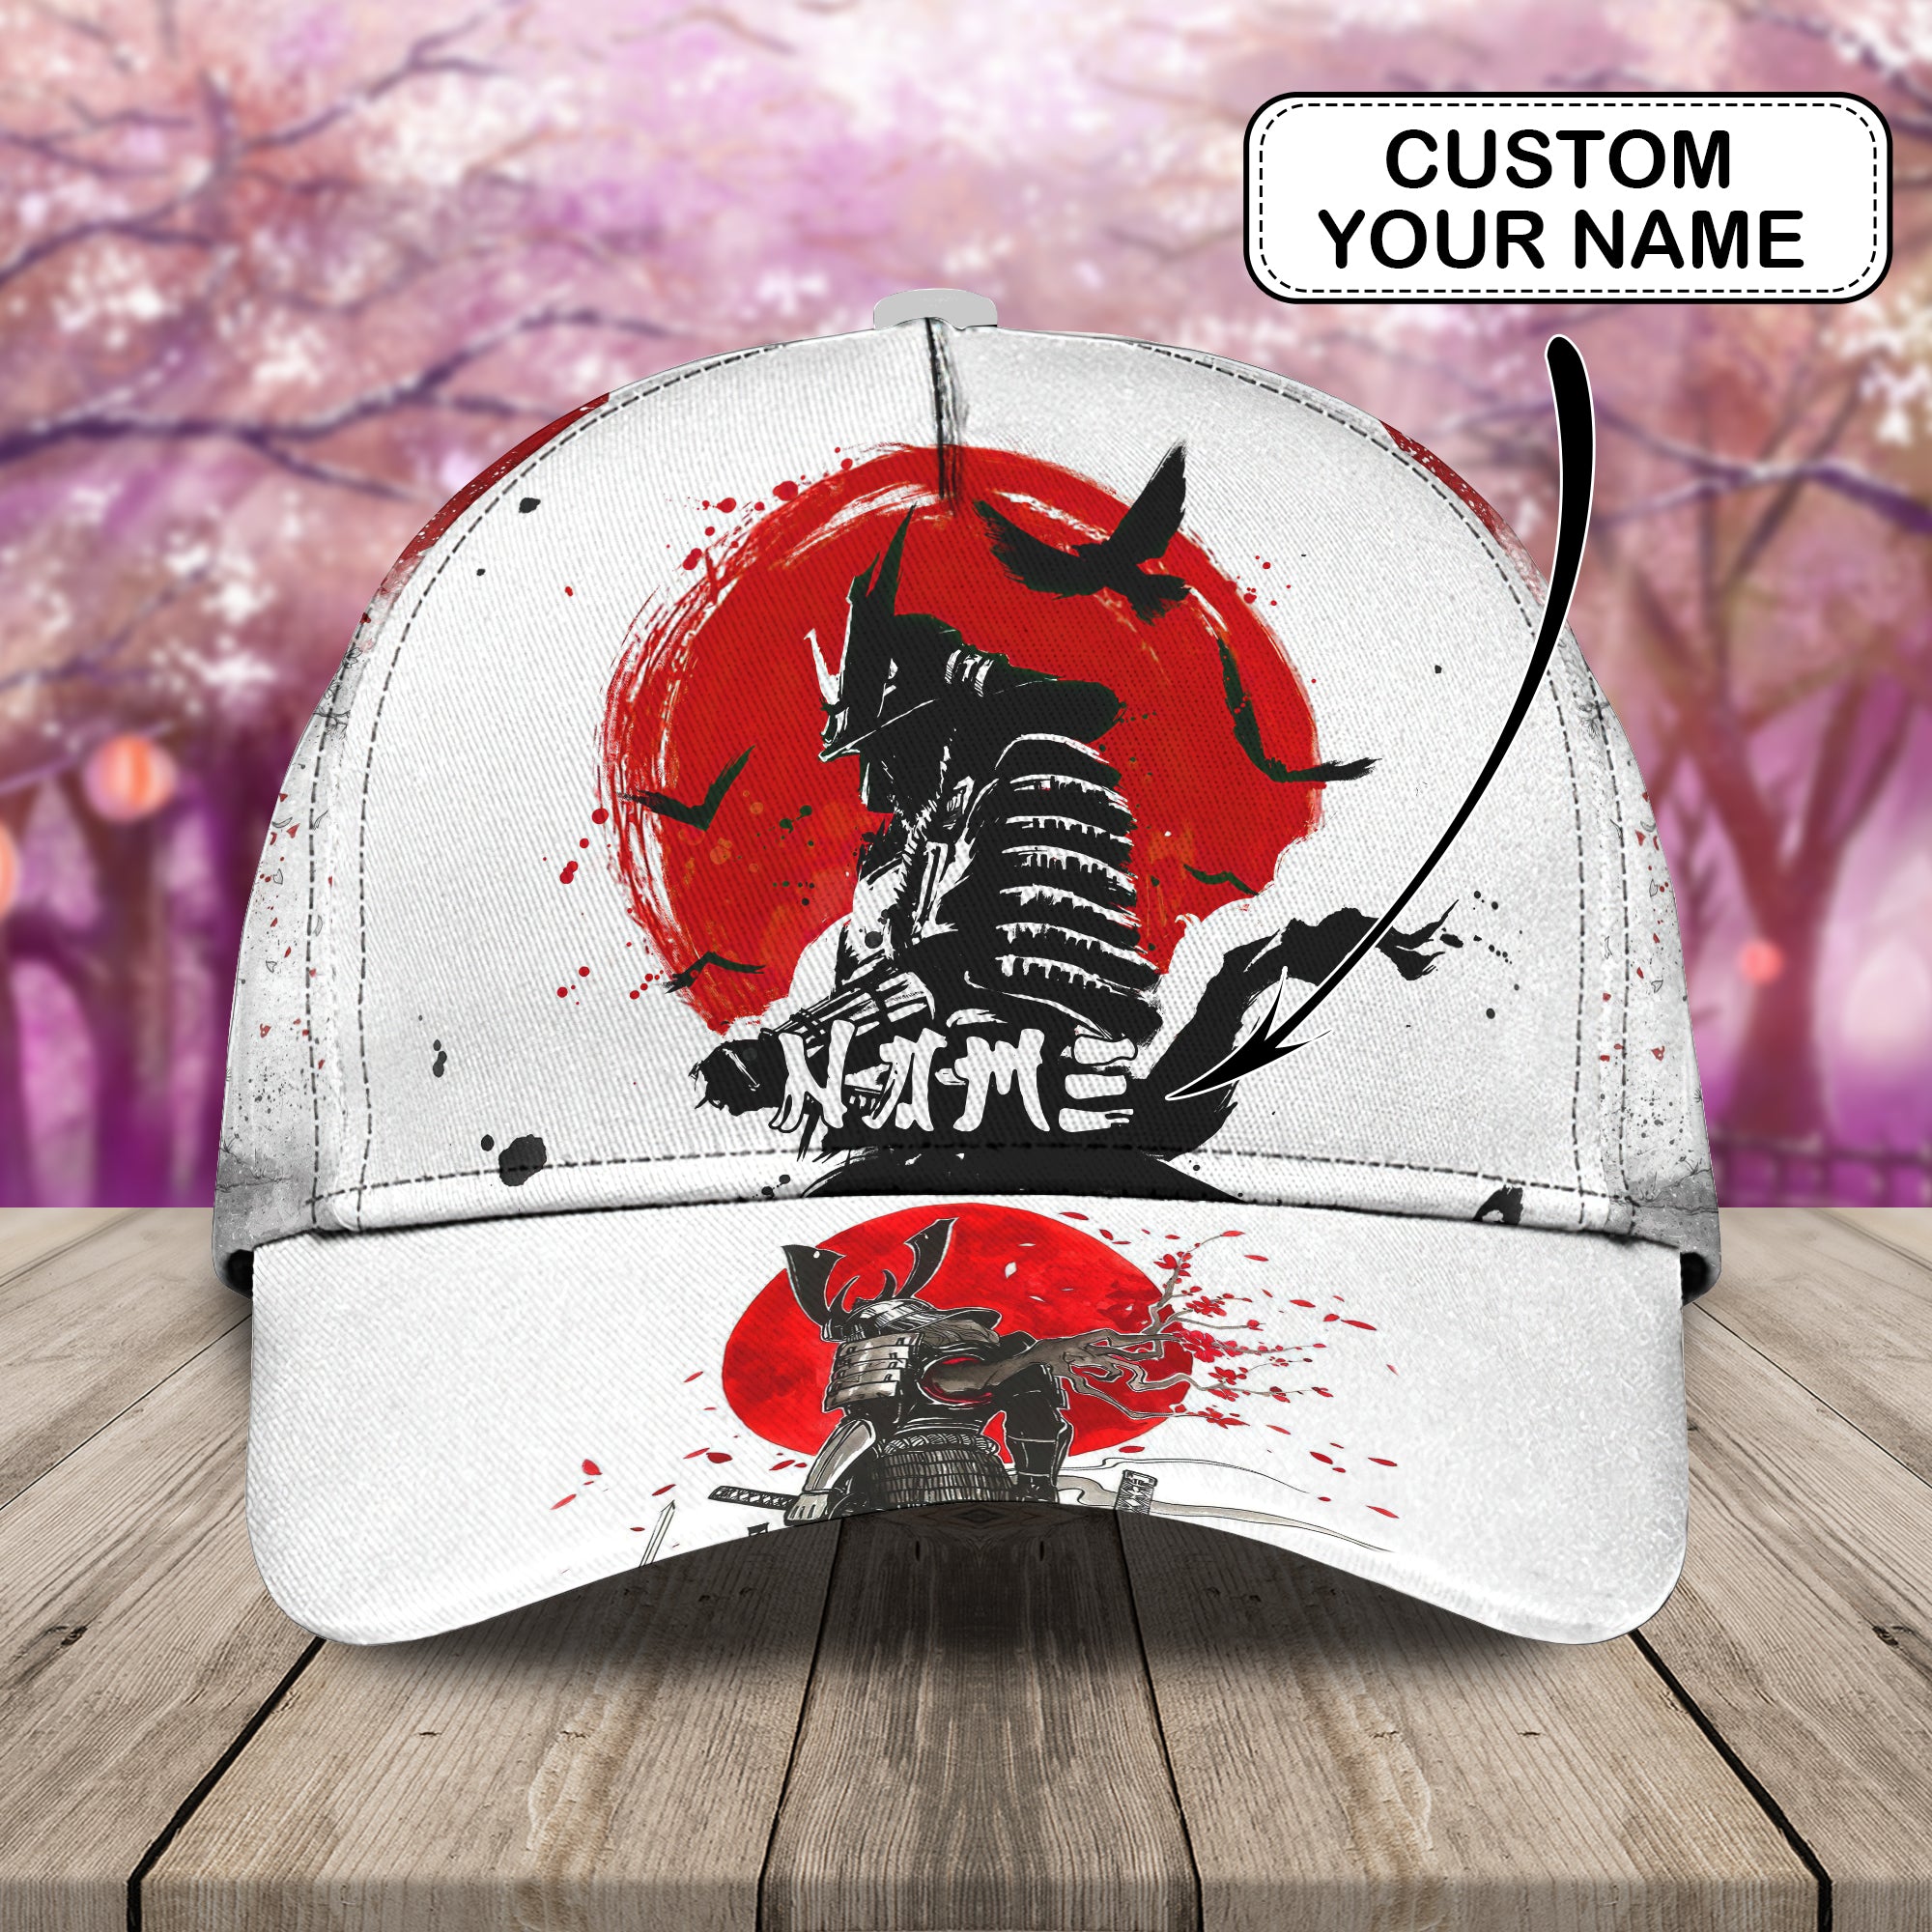 Way of the Samurai - Personalized Name Cap - Loop - Vhv-cap-015